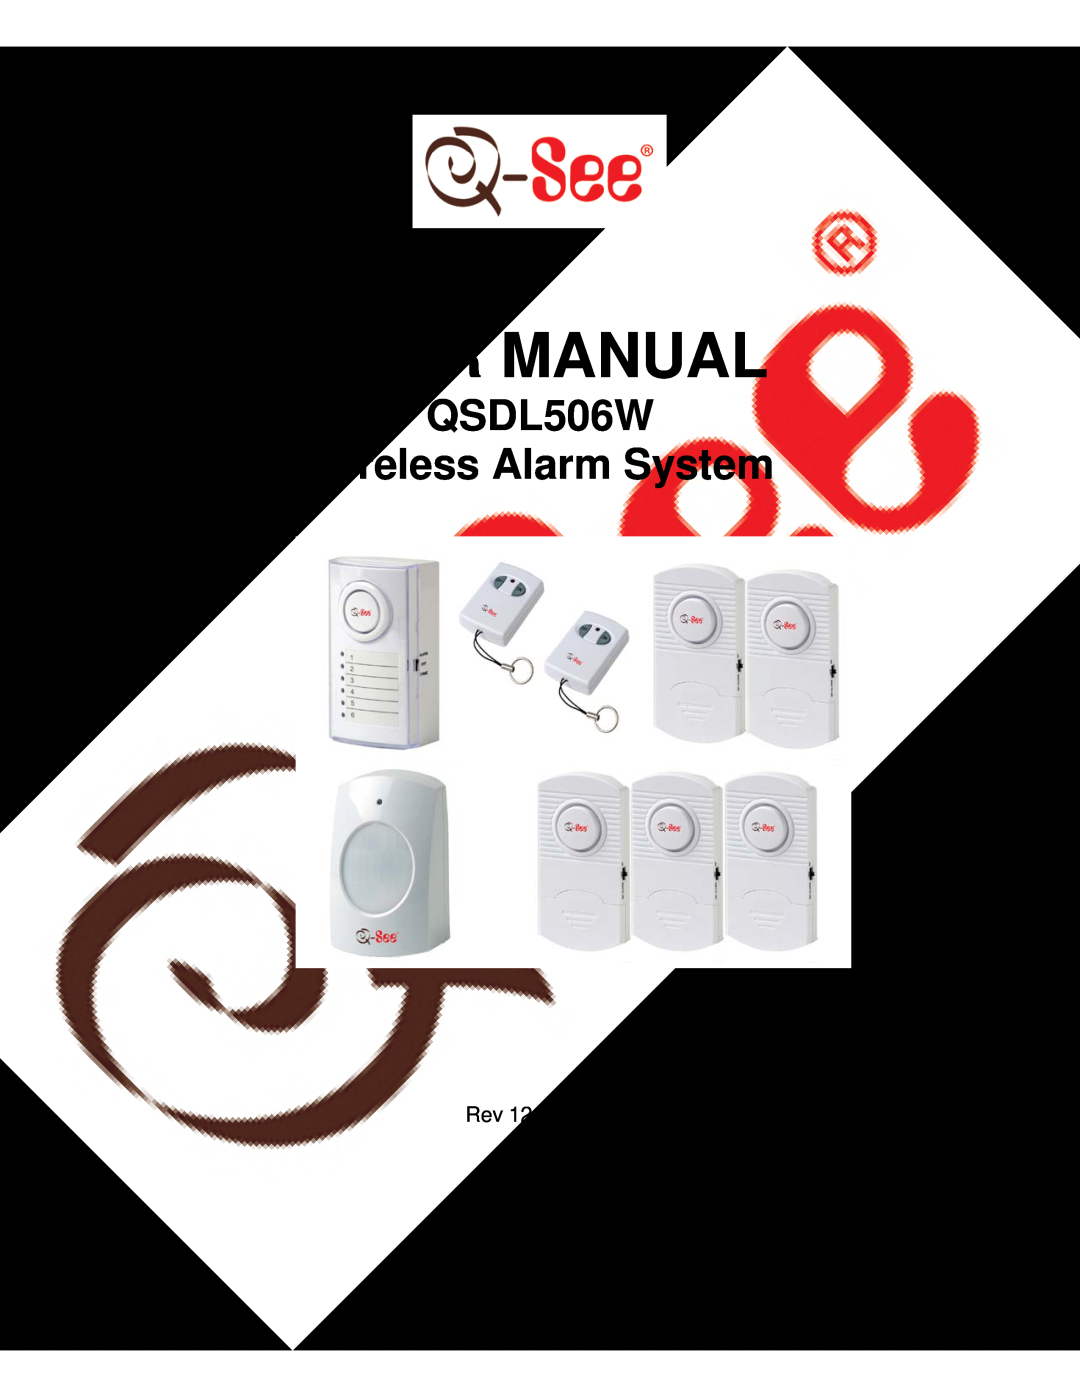 Q-See user manual QSDL506W Wireless Alarm System 